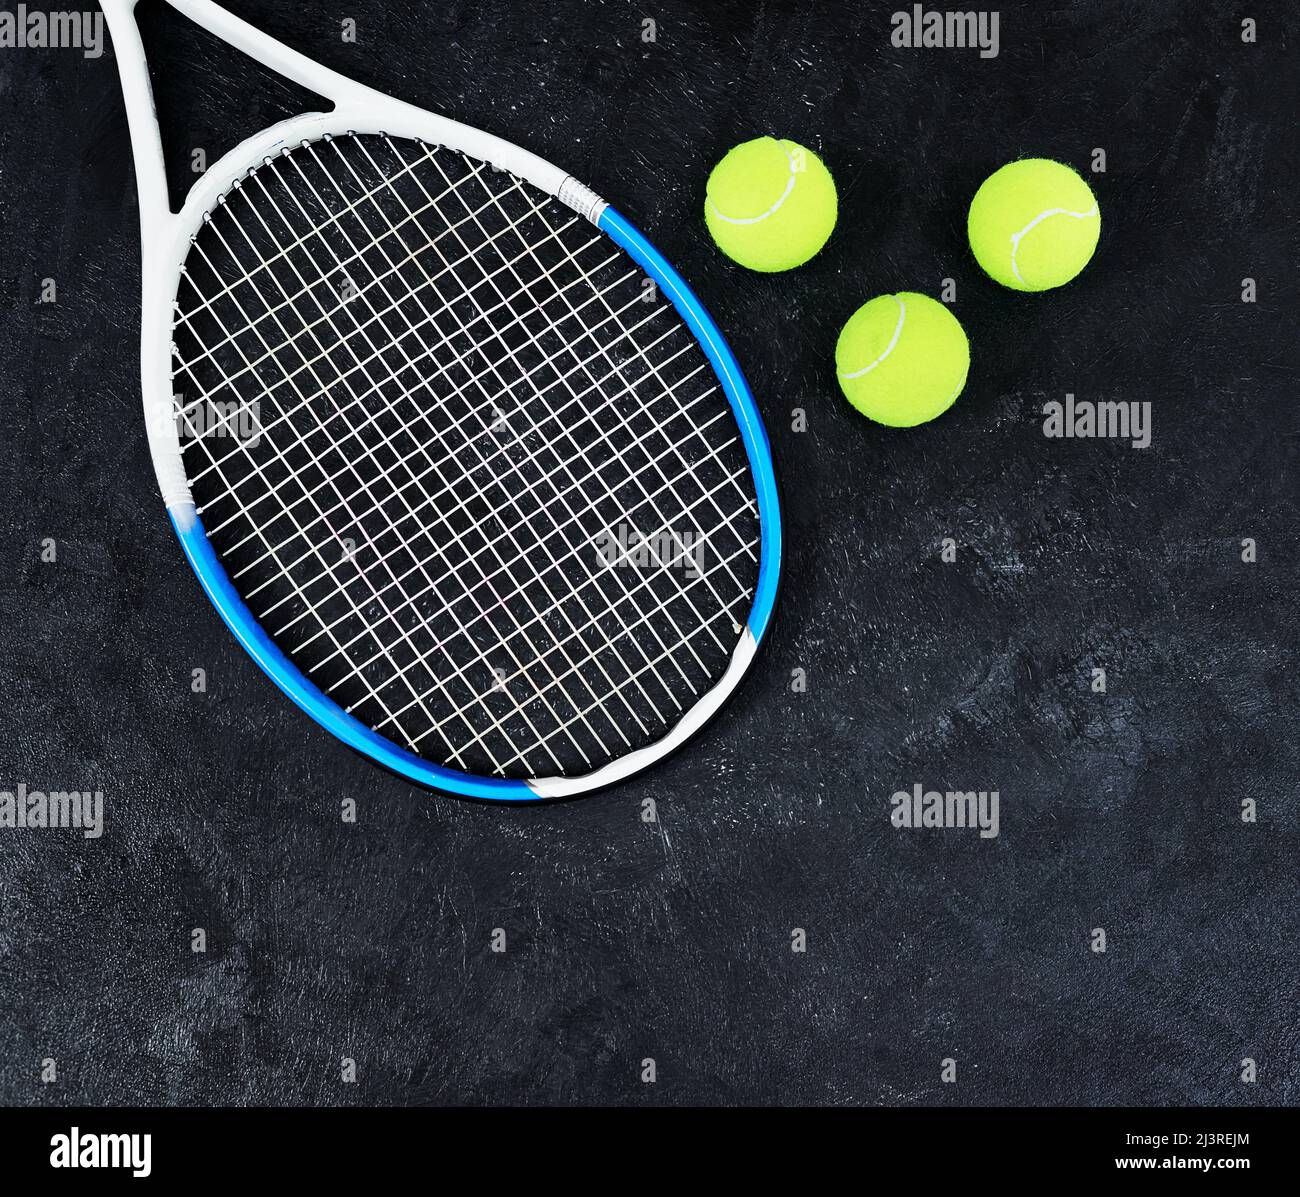 C'est à votre tour de servir. Photo en grand angle d'une seule raquette de tennis et de quelques balles de tennis placées sur un fond sombre à l'intérieur d'un studio. Banque D'Images